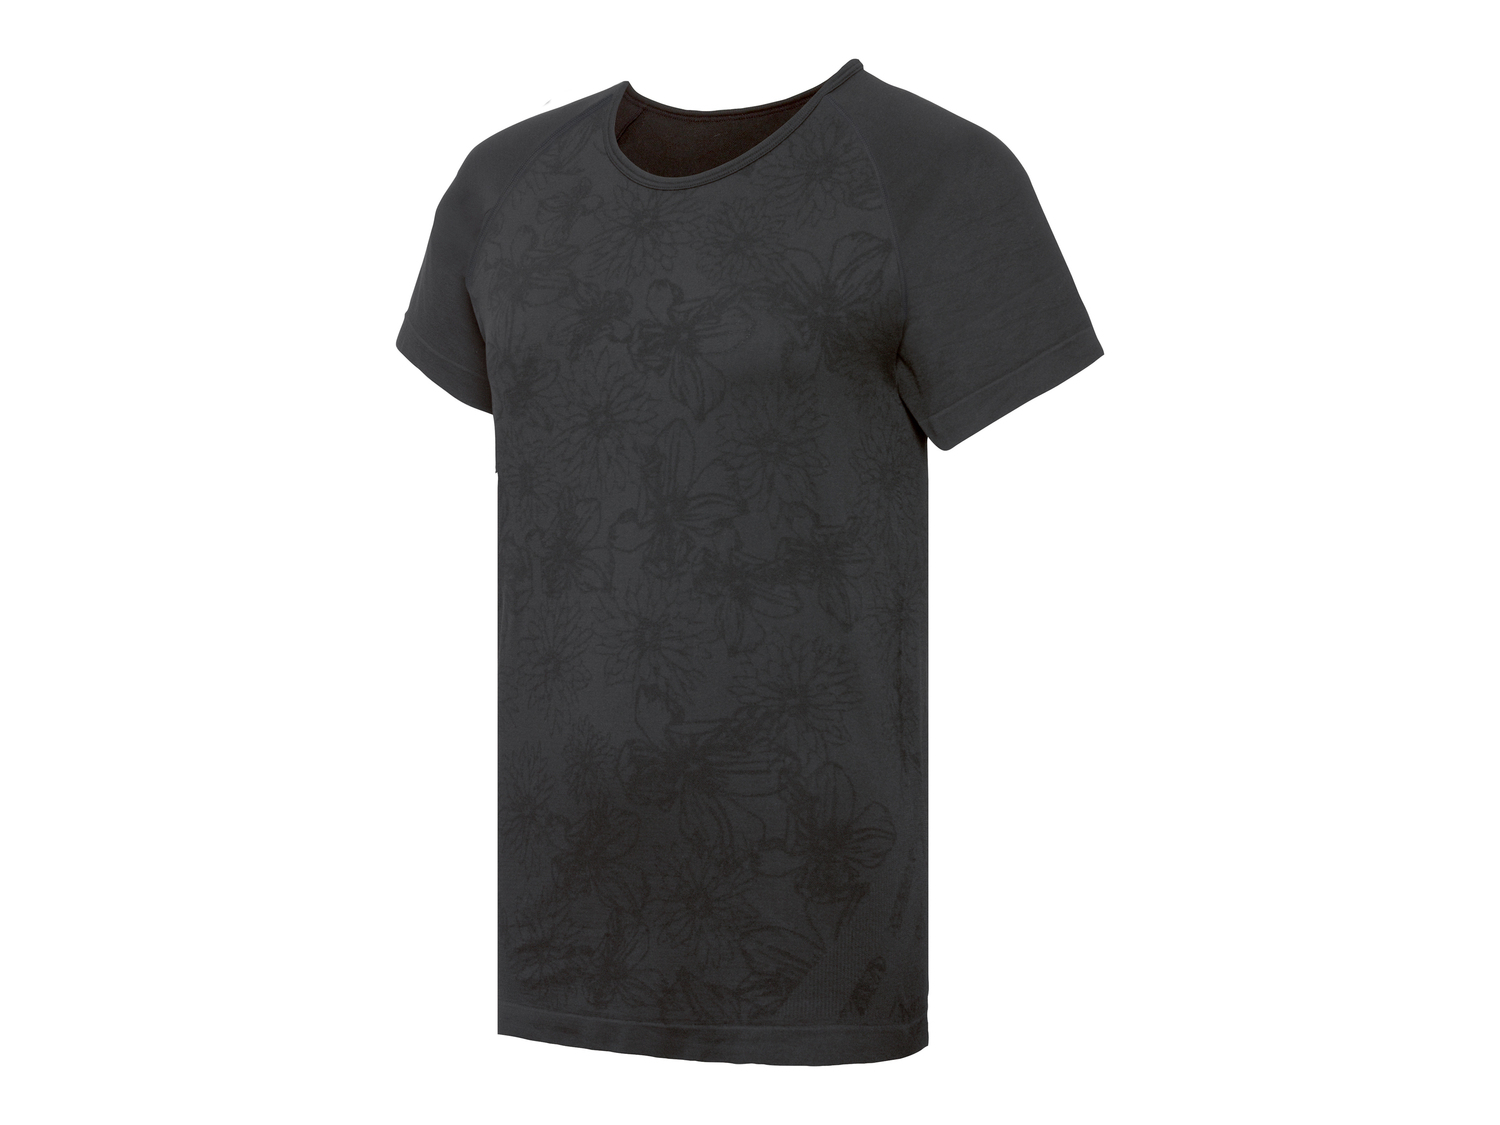 T-shirt sportiva da donna Crivit, prezzo 4.99 &#8364; 
Misure: S-L
Taglie disponibili

Caratteristiche
 ...